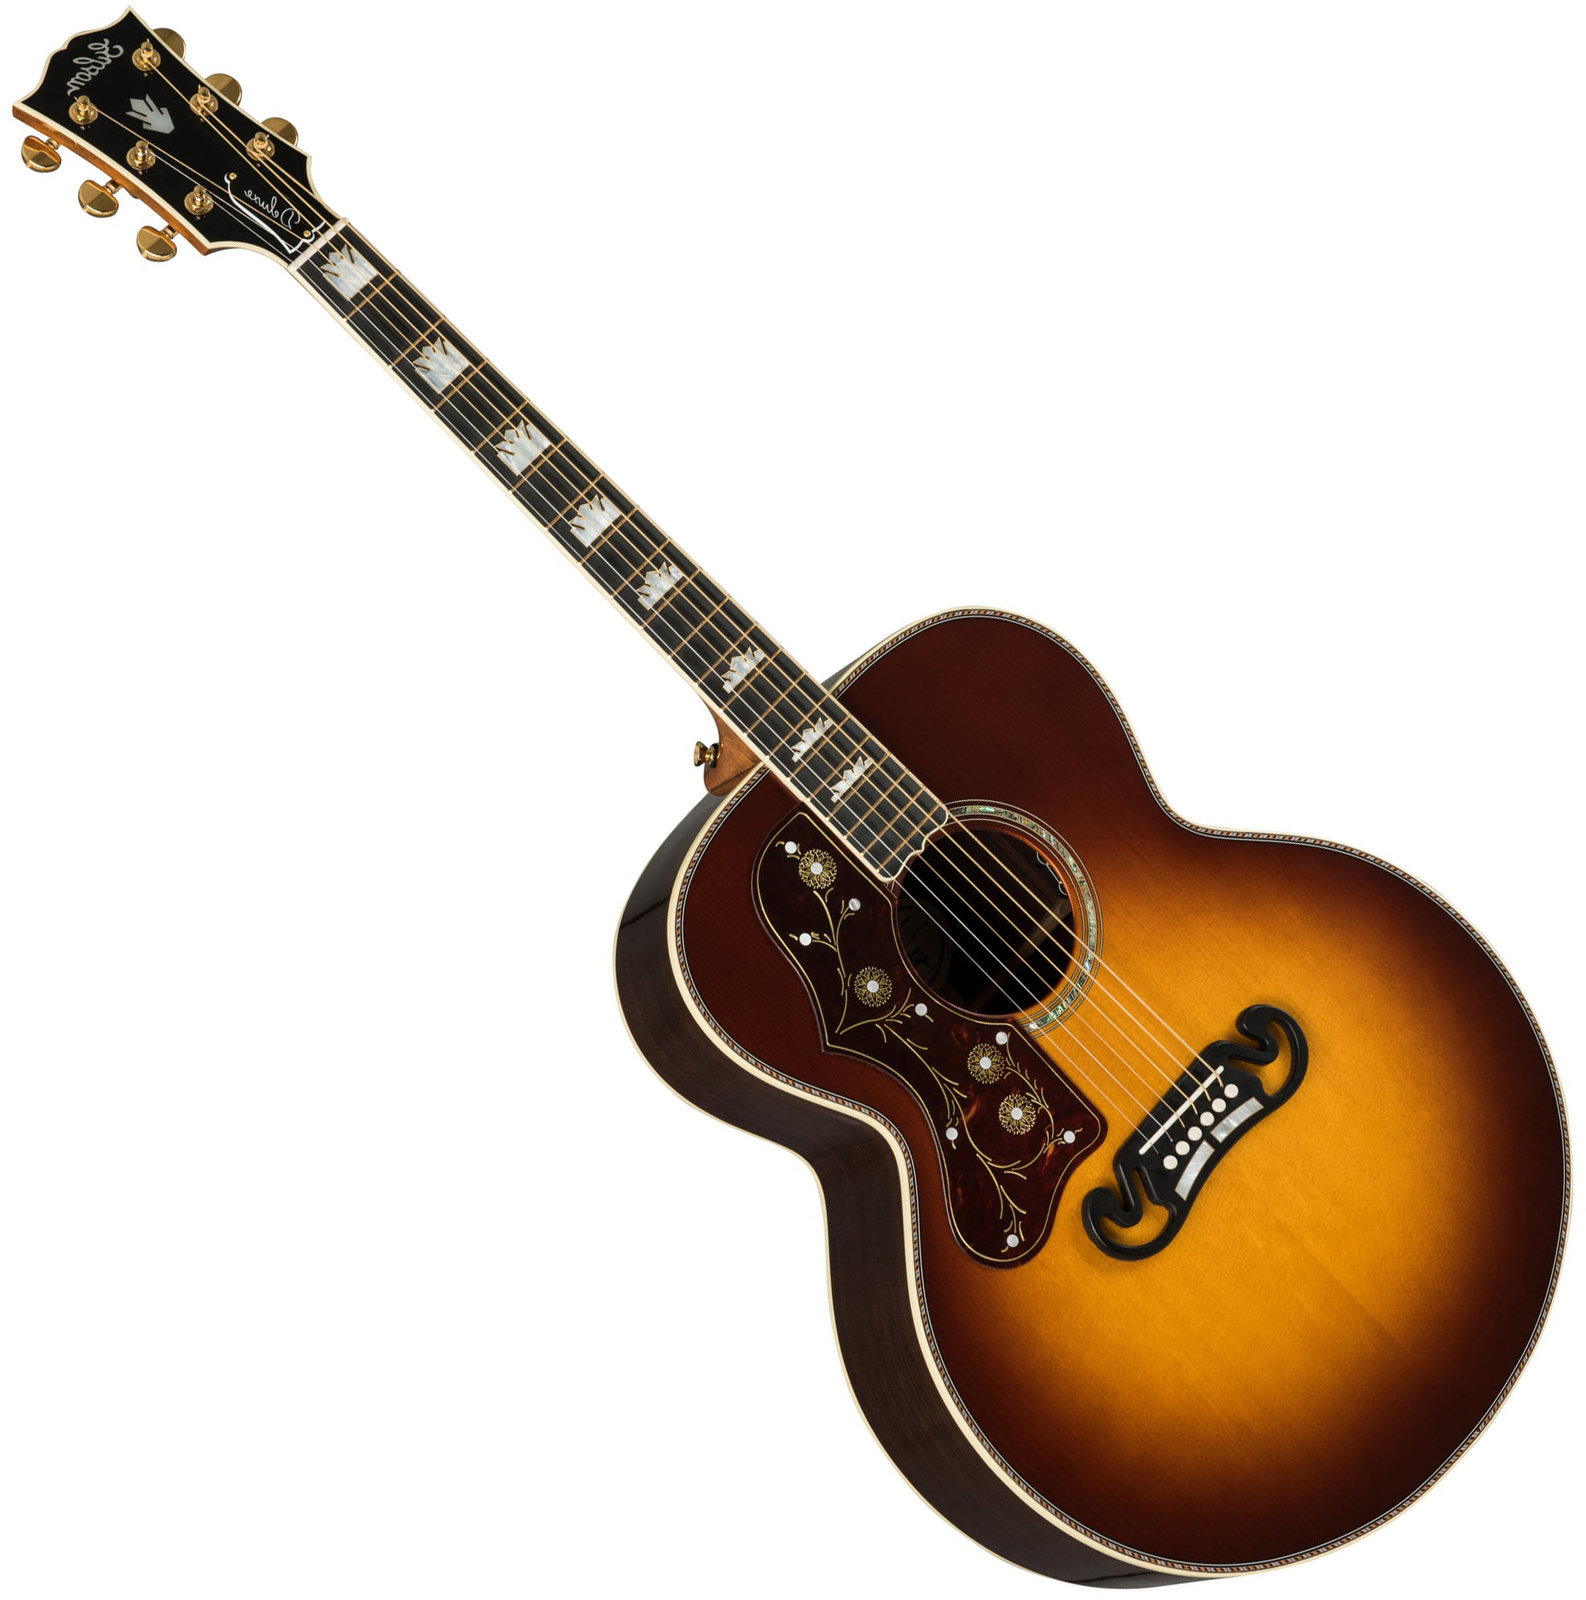 Jumbo elektro-akoestische gitaar Gibson J-200 Deluxe 2019 Rosewood Burst Lefty